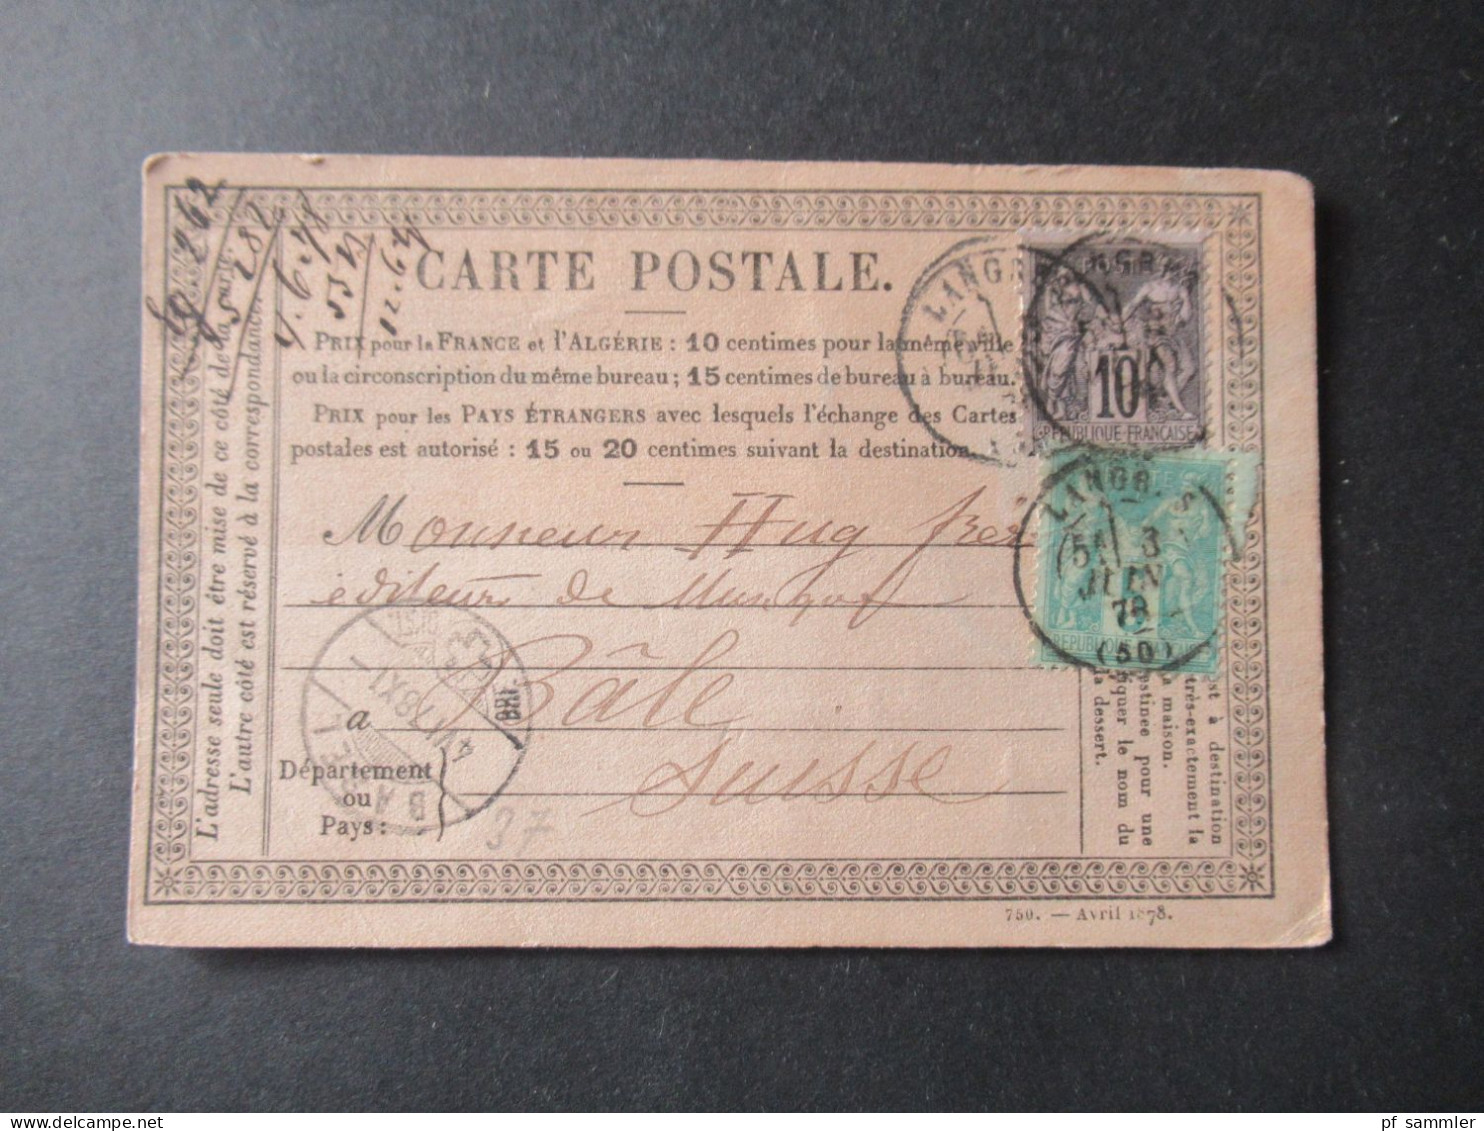 Frankreich 1870er Jahre Carte Postale / PK toller Posten mit 80 Stück!! Überwiegend frankiert und ins Ausland gesendet!